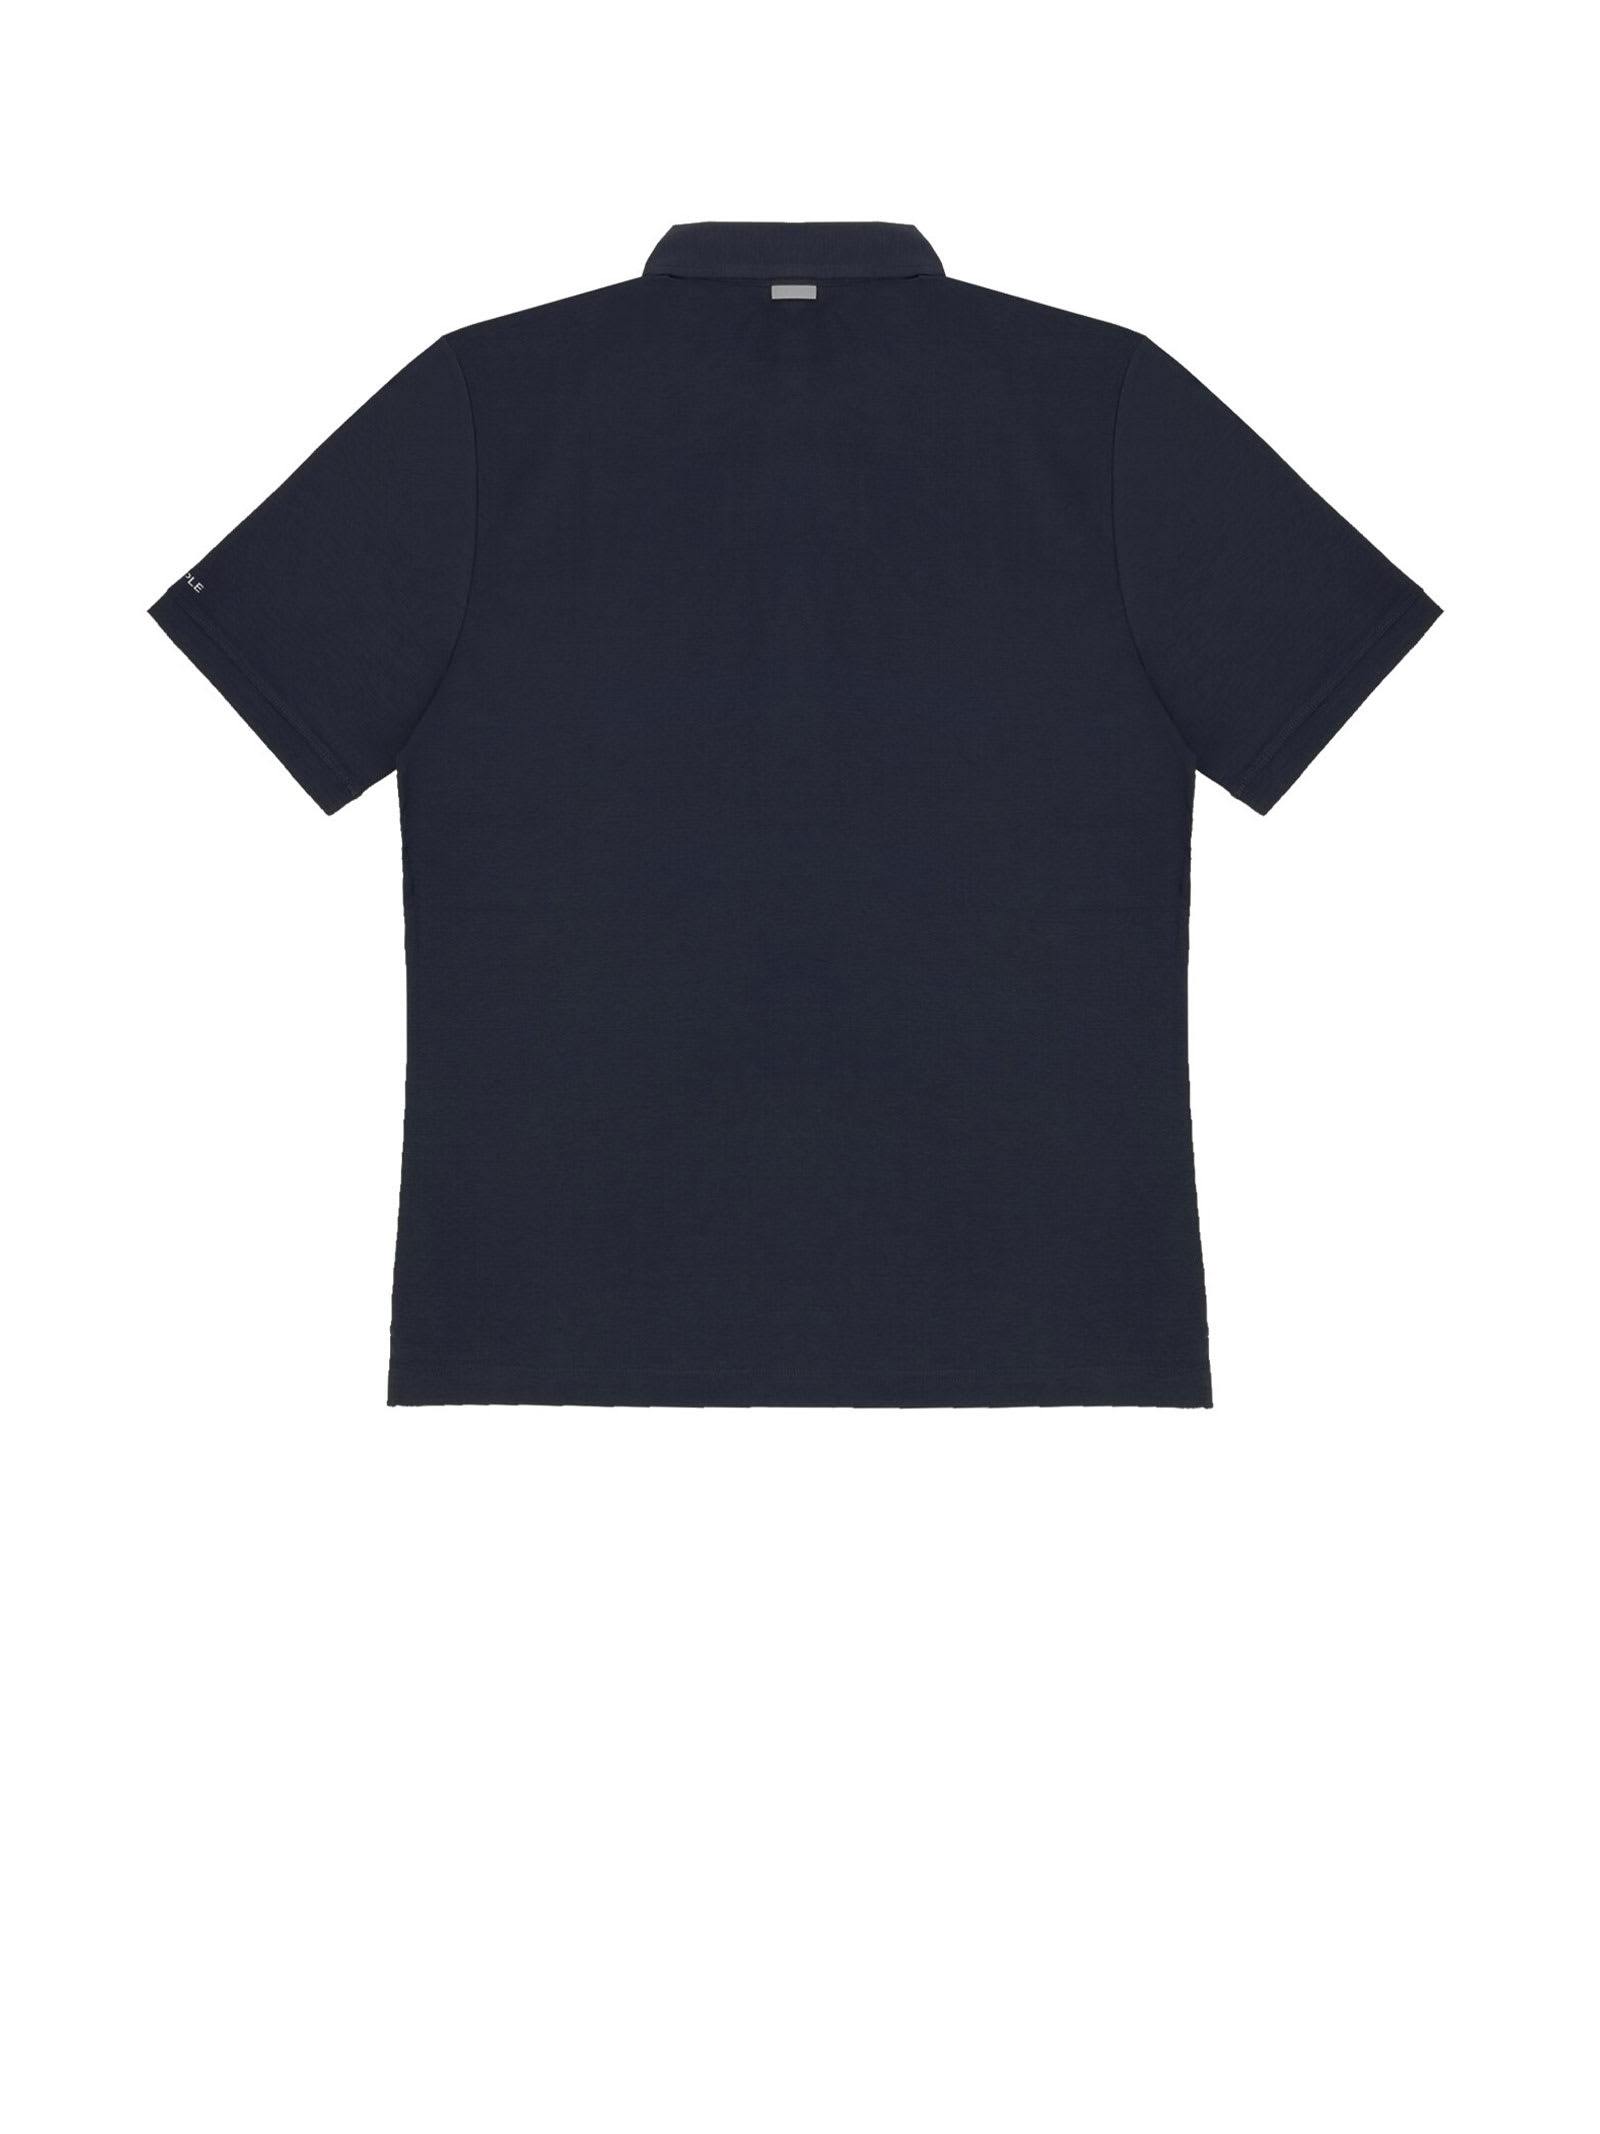 Shop People Of Shibuya Navy Blue Short-sleeved Polo Shirt